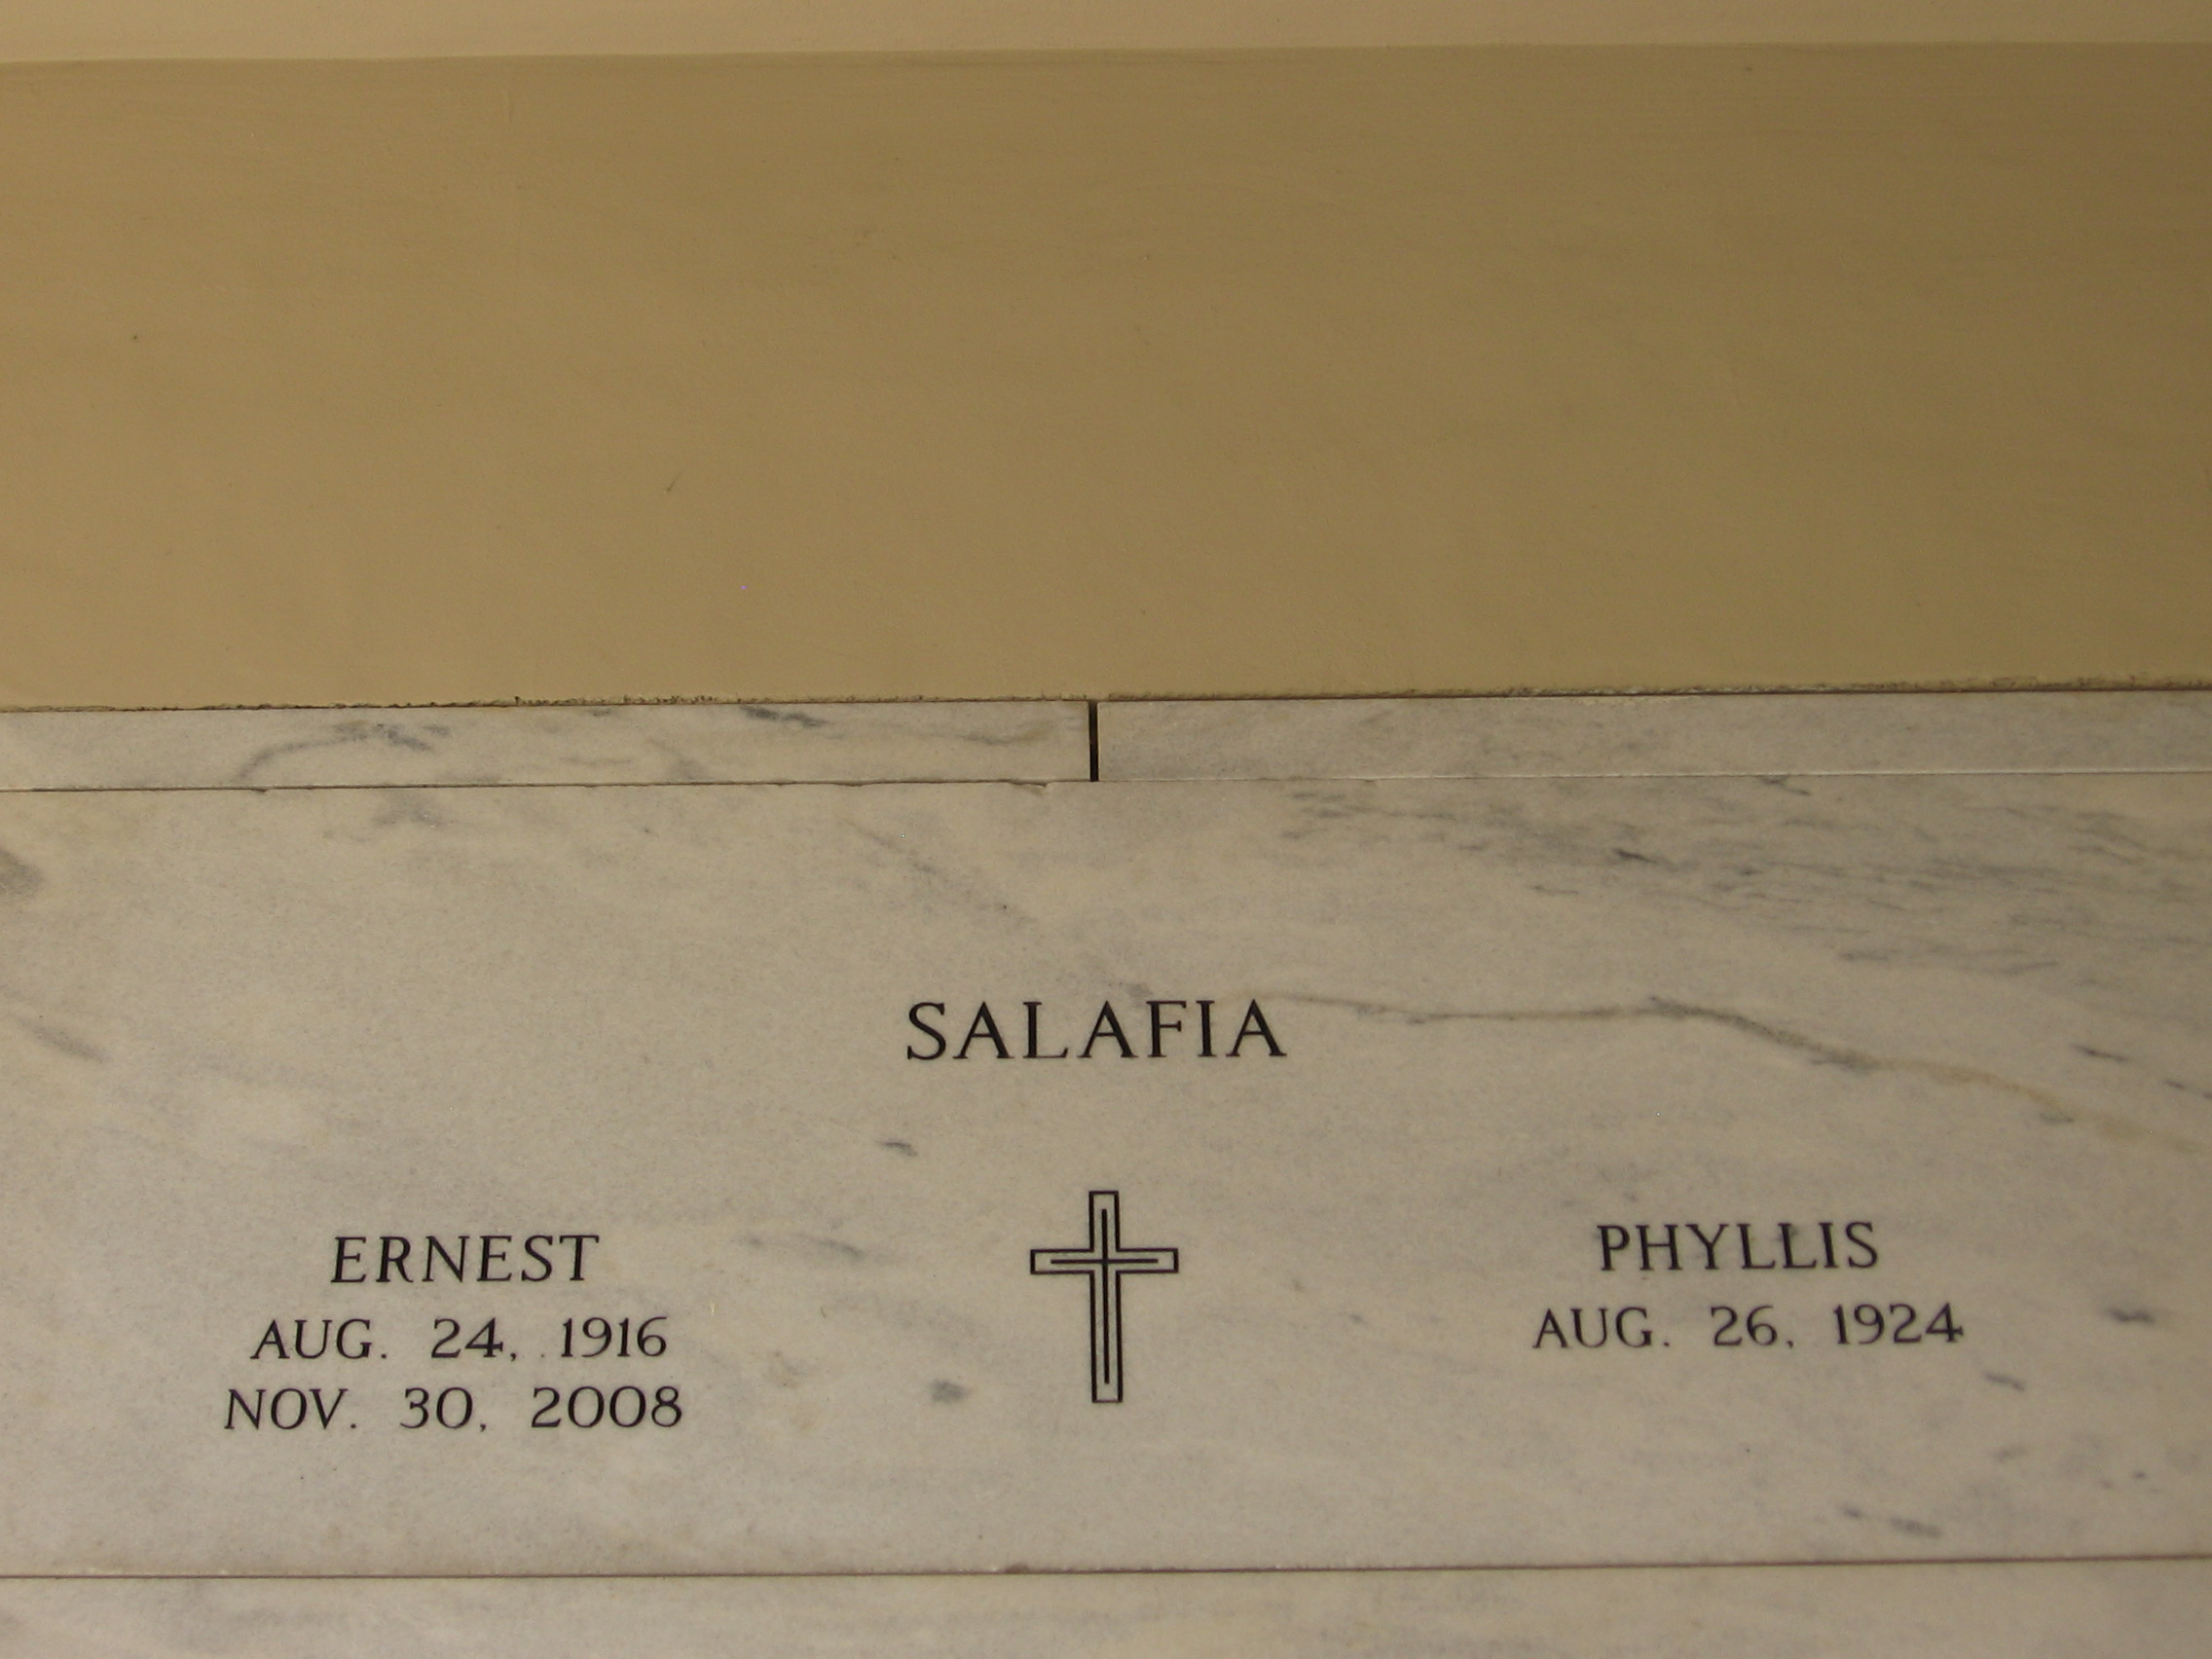 Ernest Salafia